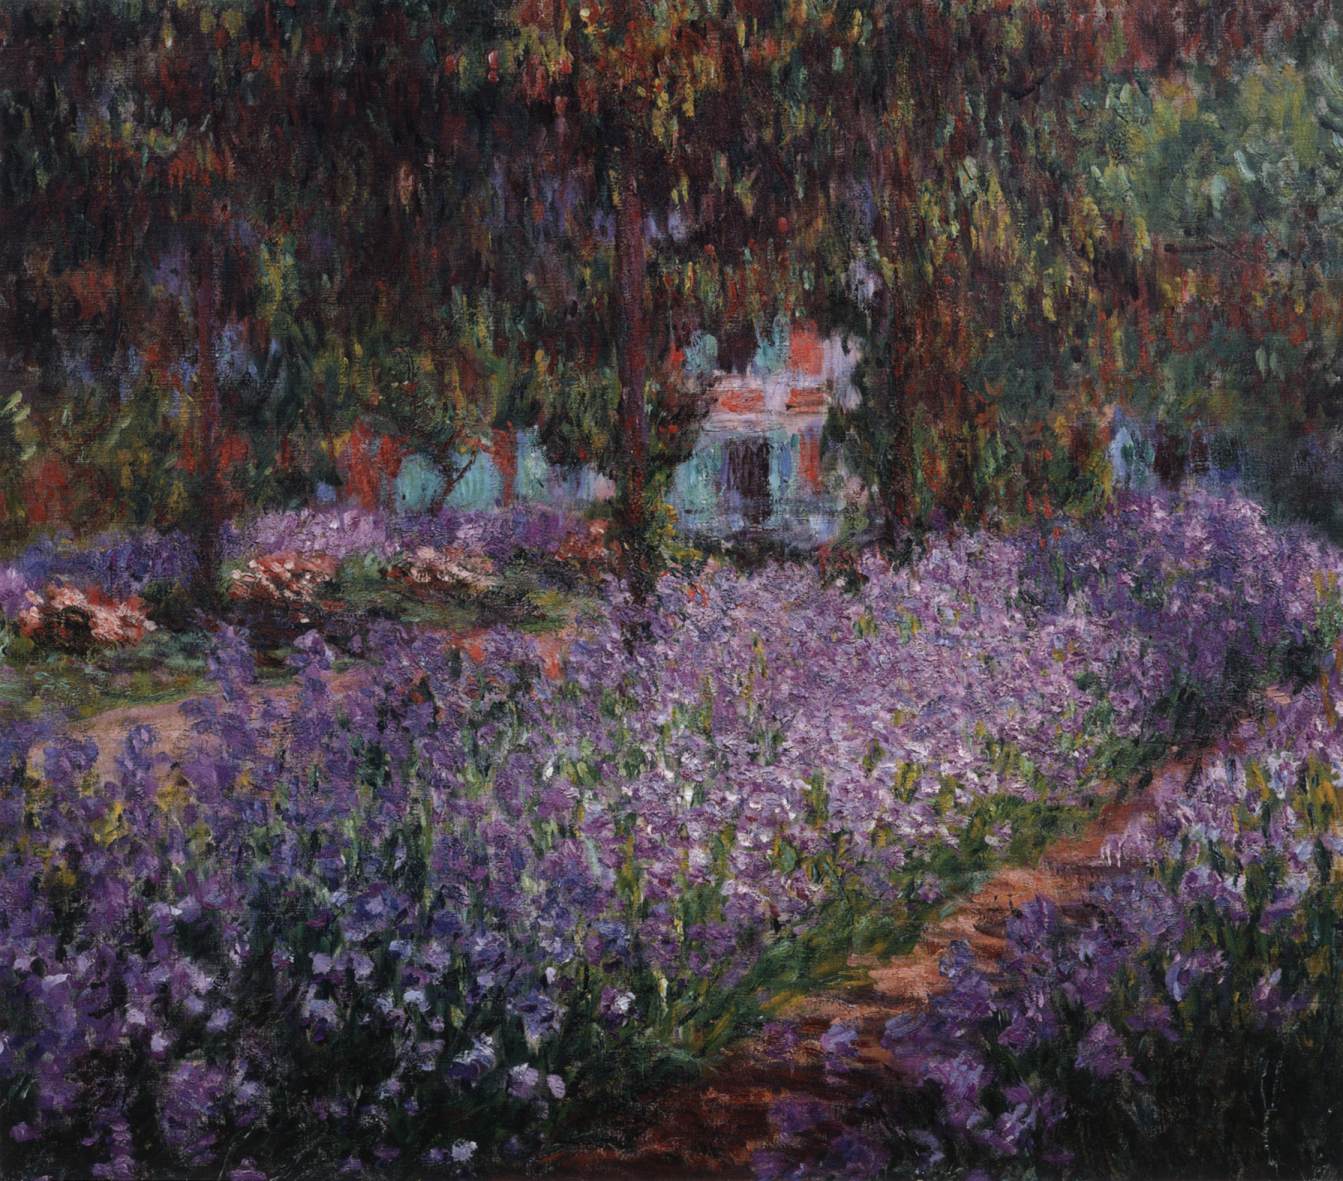 Iris i Monet Garden i Giverny